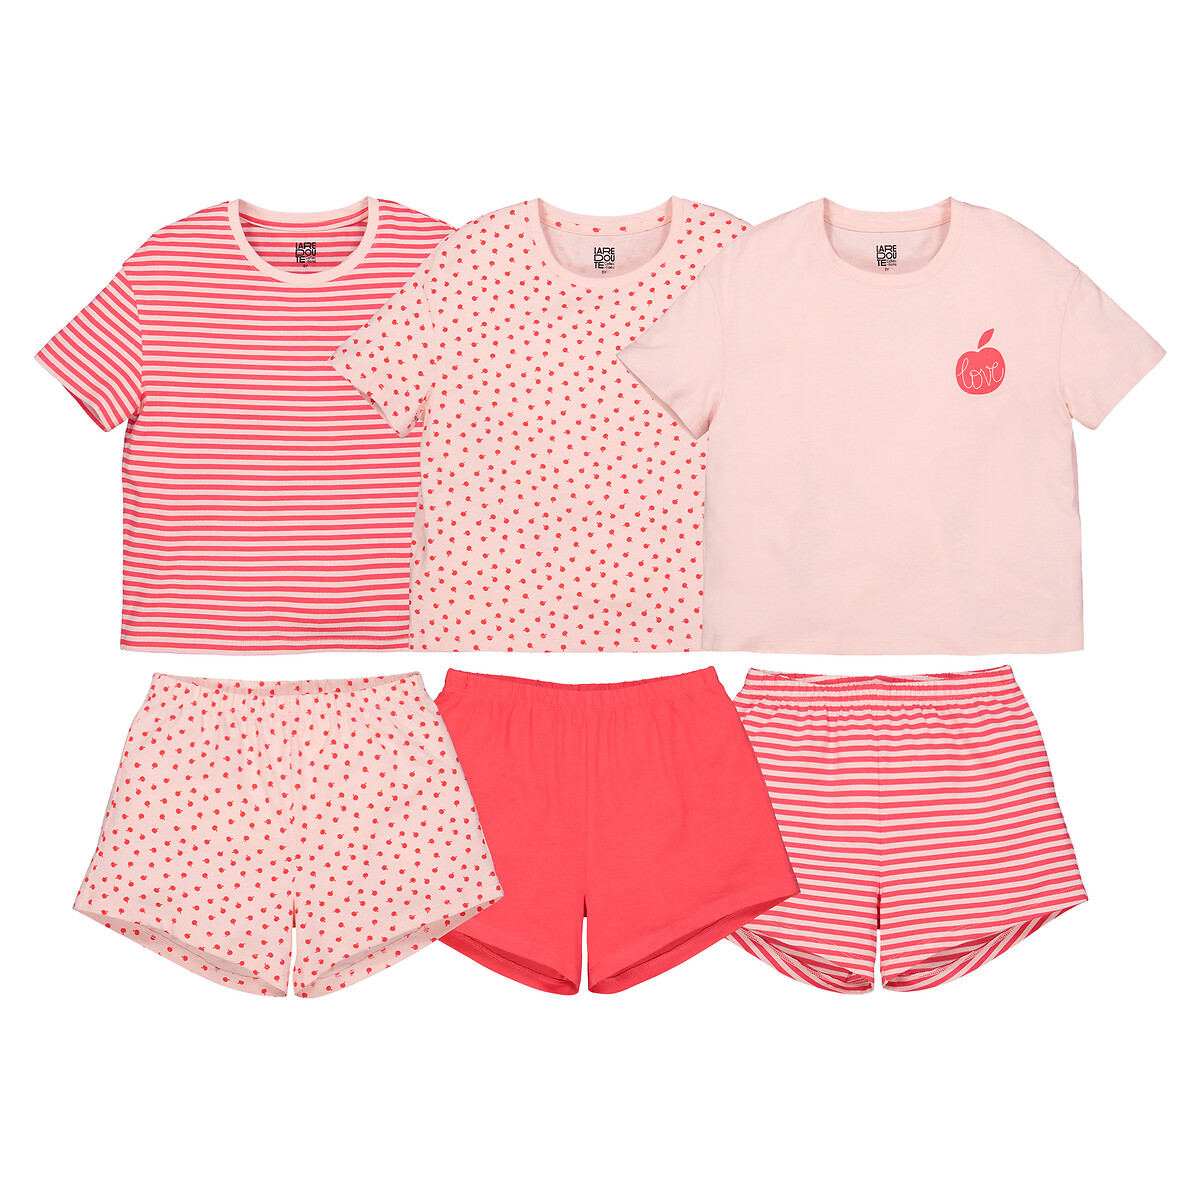 Комплект из трех пижам La Redoute 4 года - 102 см розовый